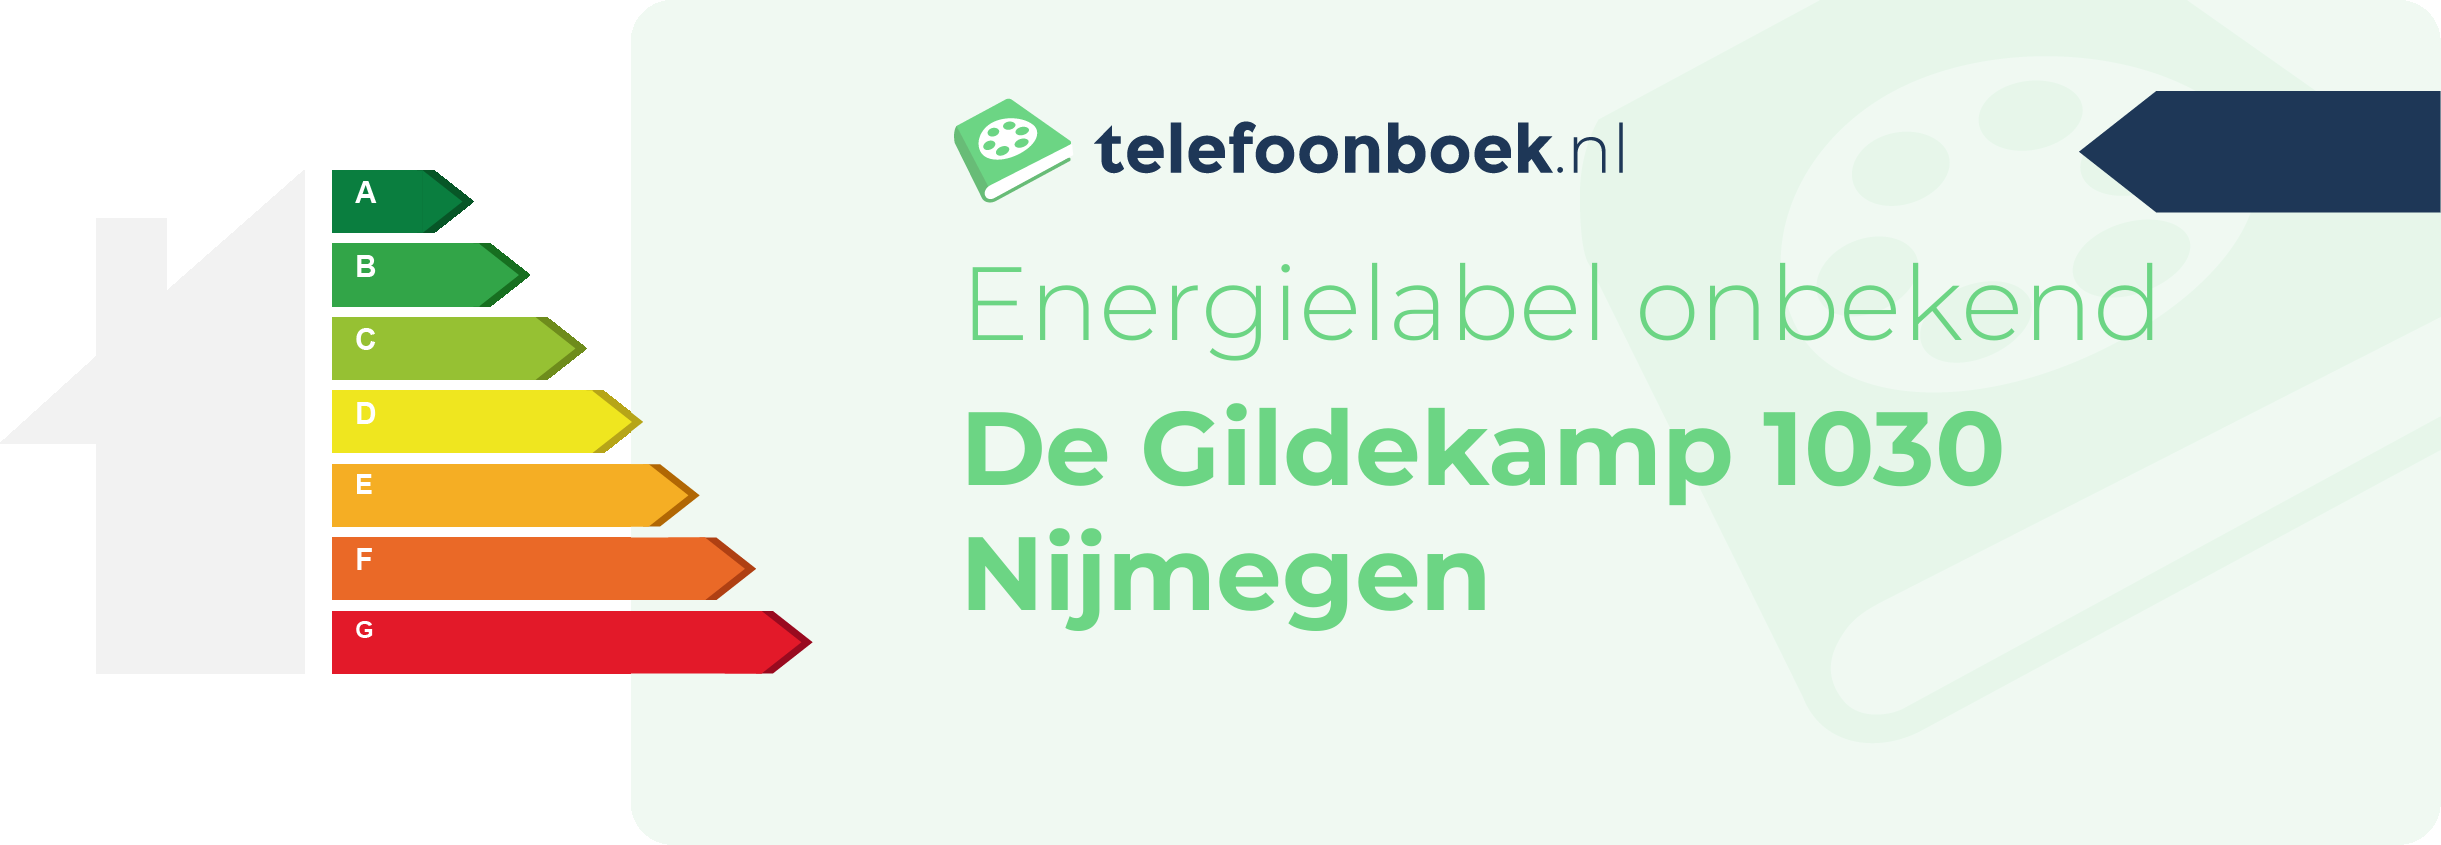 Energielabel De Gildekamp 1030 Nijmegen